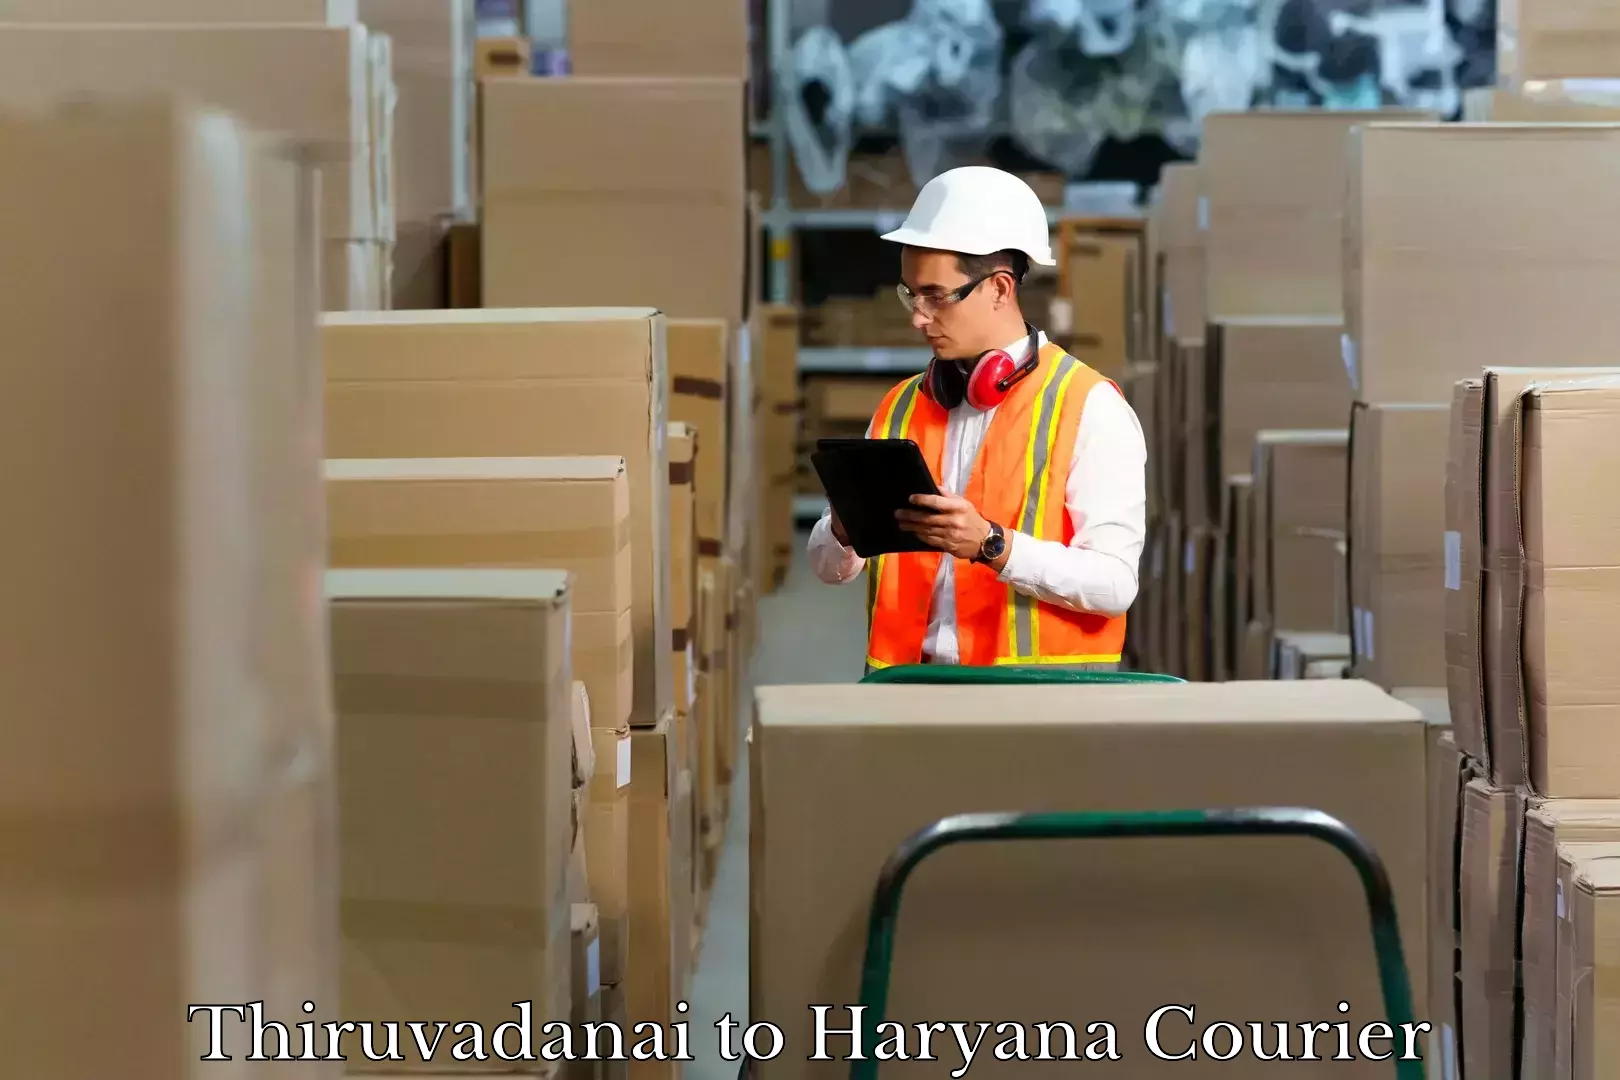 Nationwide luggage courier Thiruvadanai to NCR Haryana